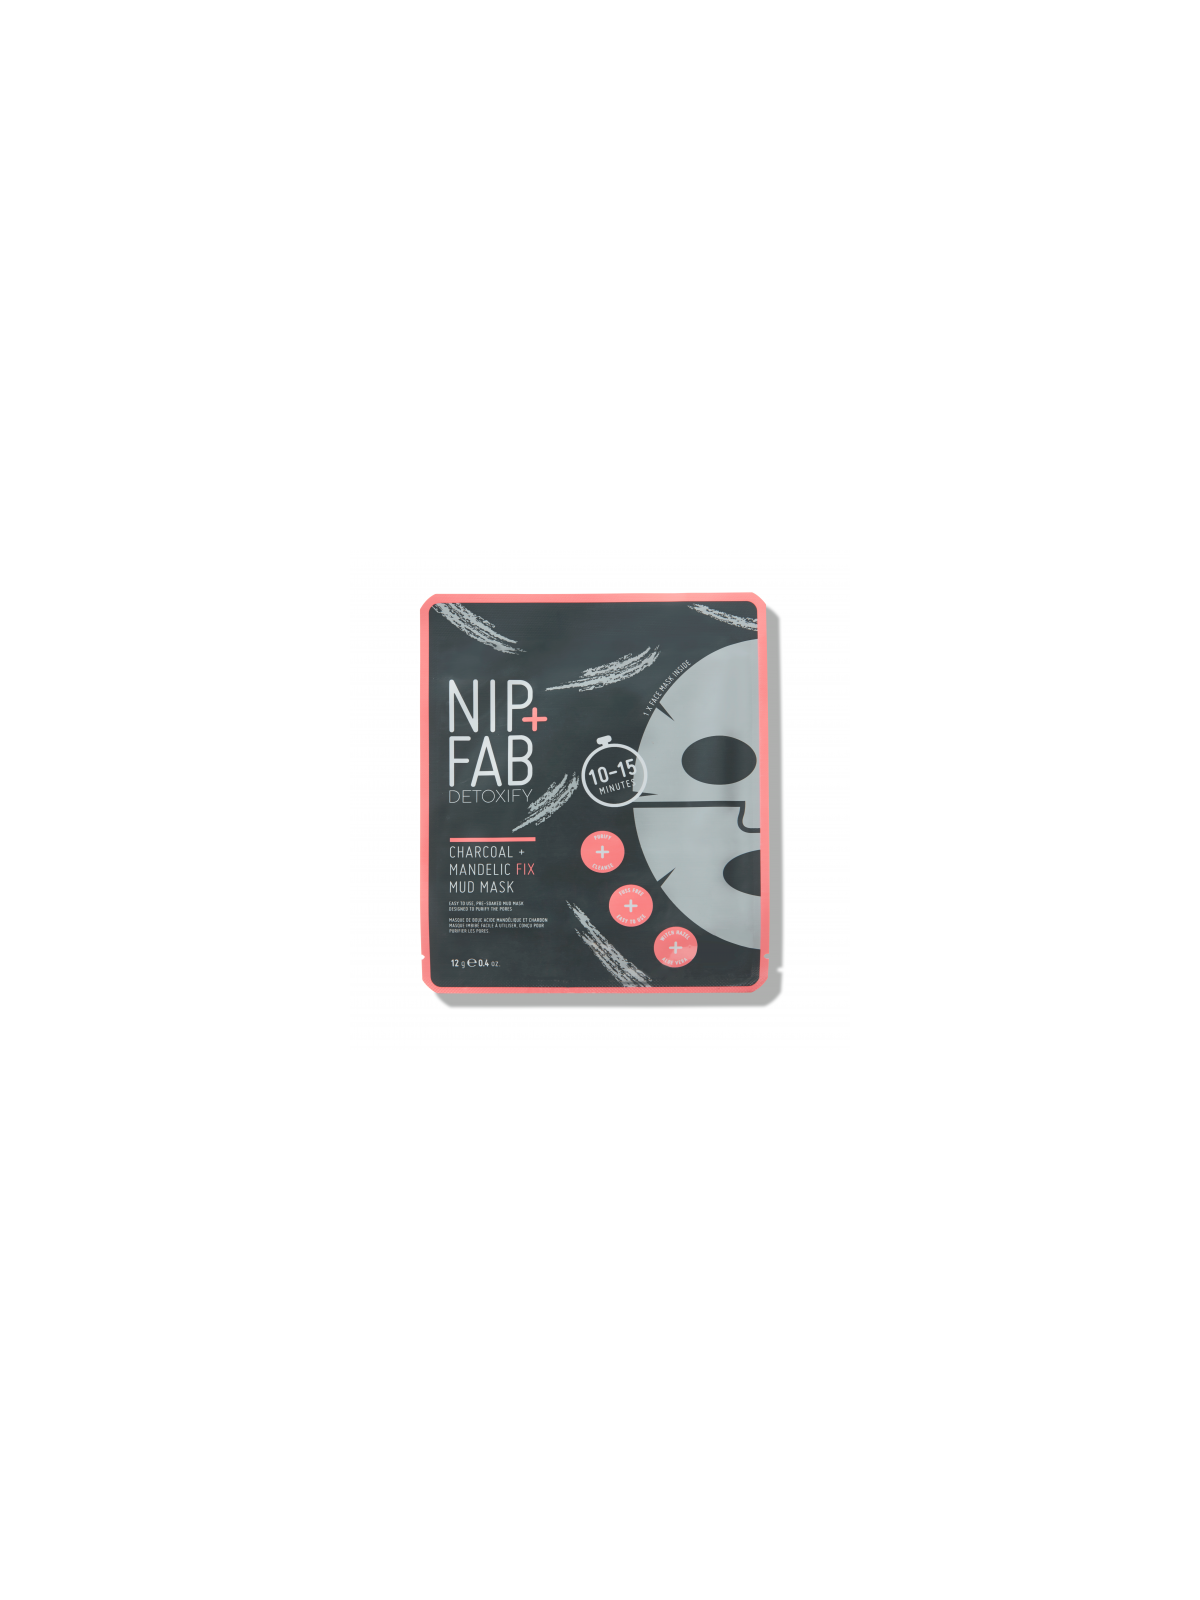 NIP + FAB Giliai valanti lakštinė veido kaukė Mandelic + Charcoal Fix Mud Sheet Mask